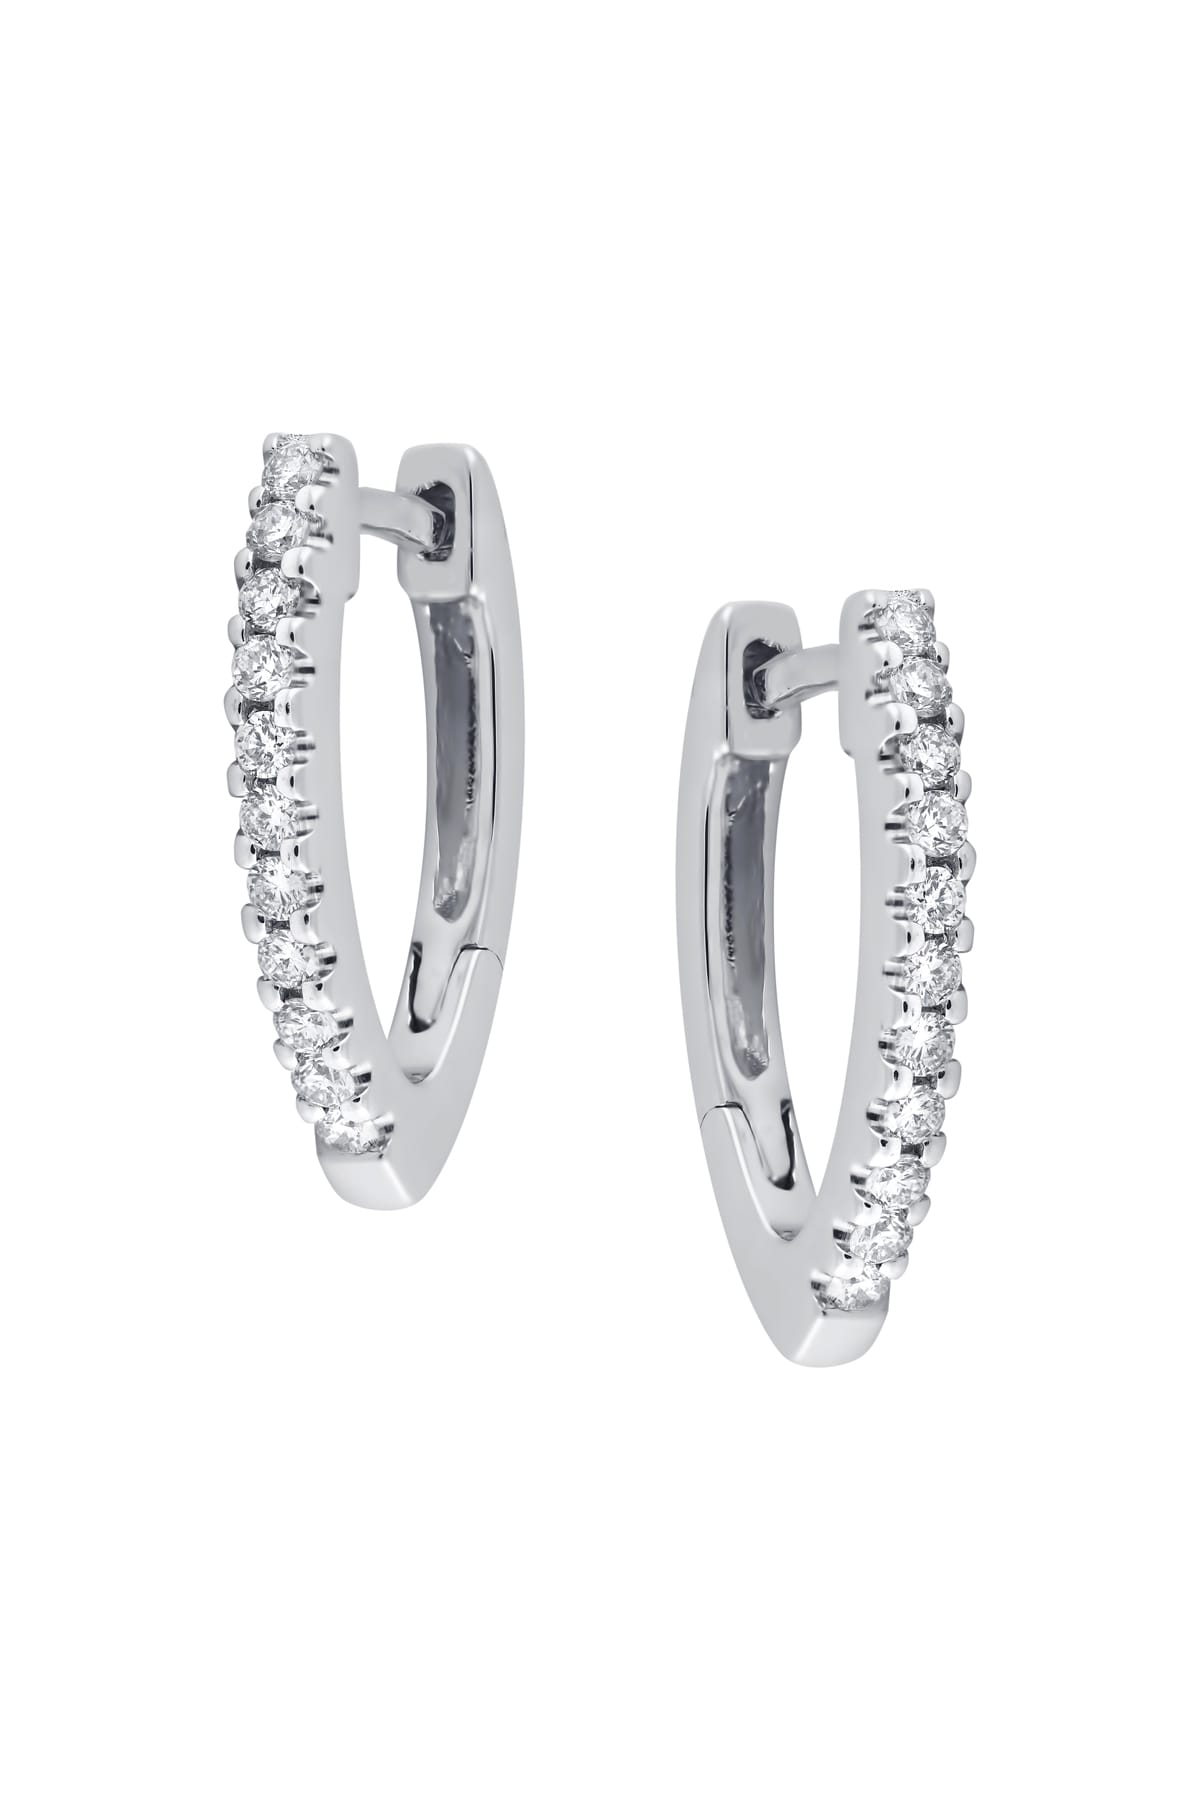 Diamond Set V-shaped Huggie Earrings In 9ct White Gold from LeGassick.